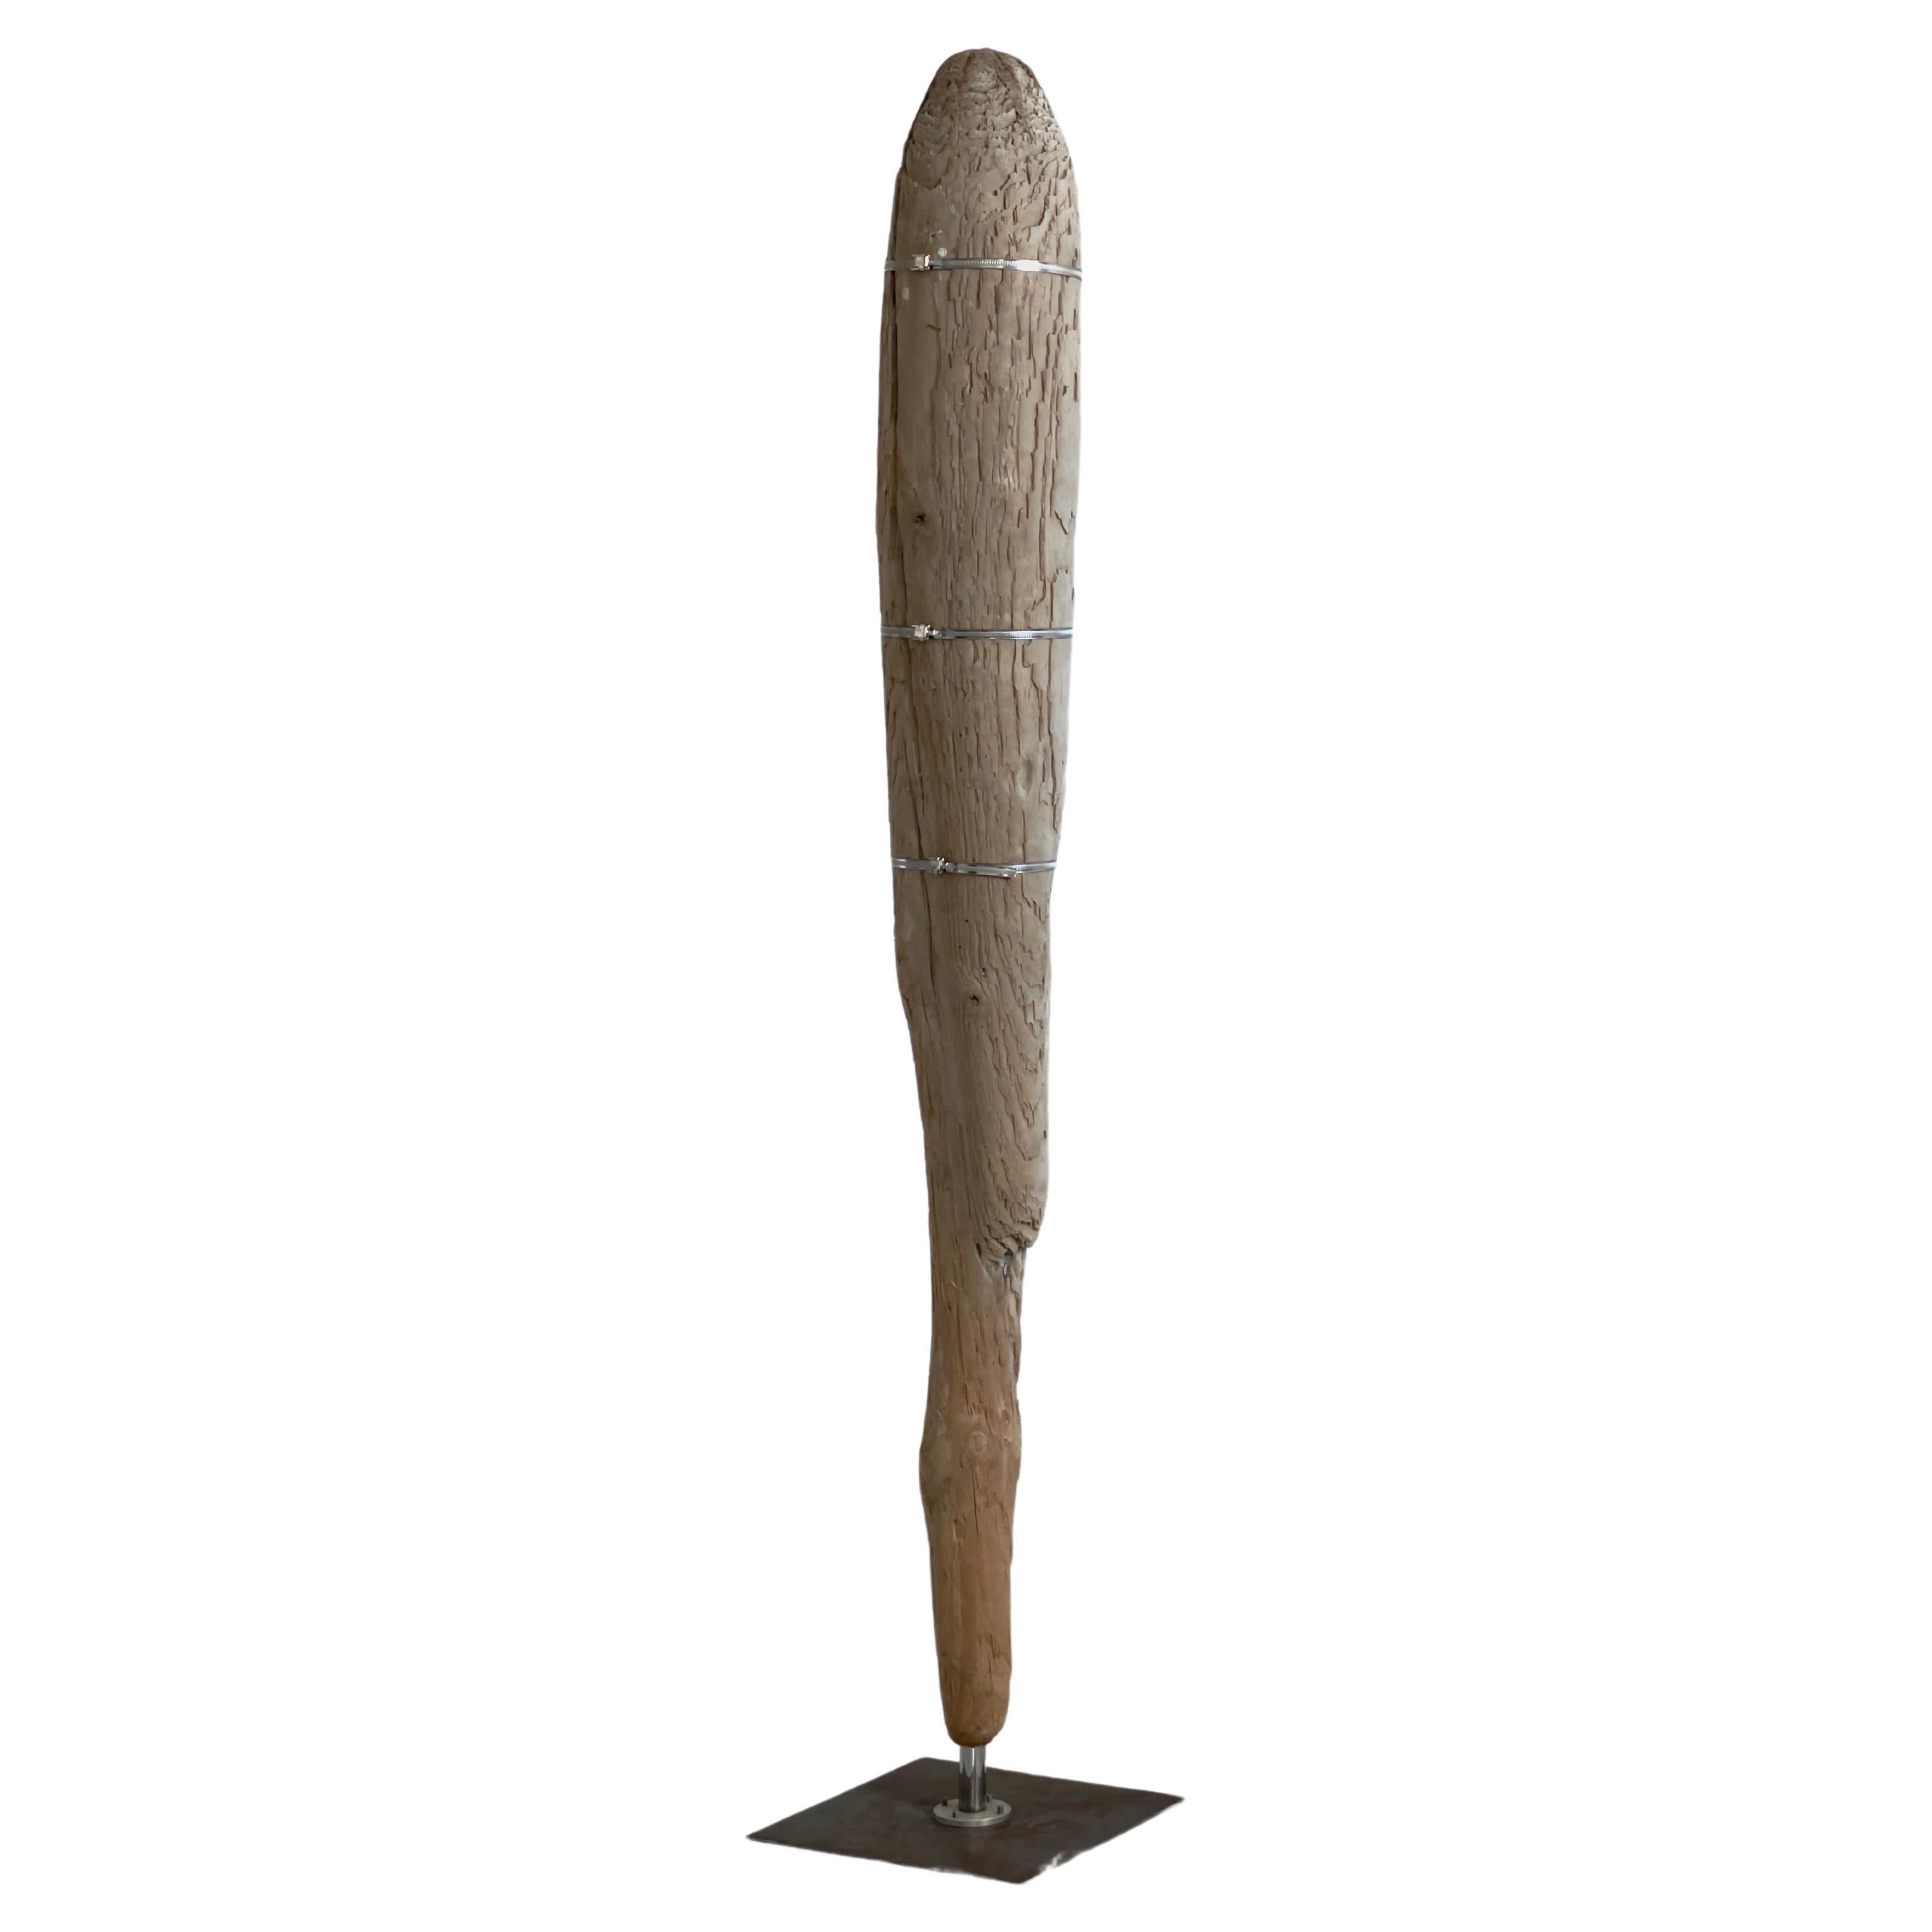  Einzigartige menschliche Größe Dekoration eines Drift Timber Skulptur auf Metall Stand.